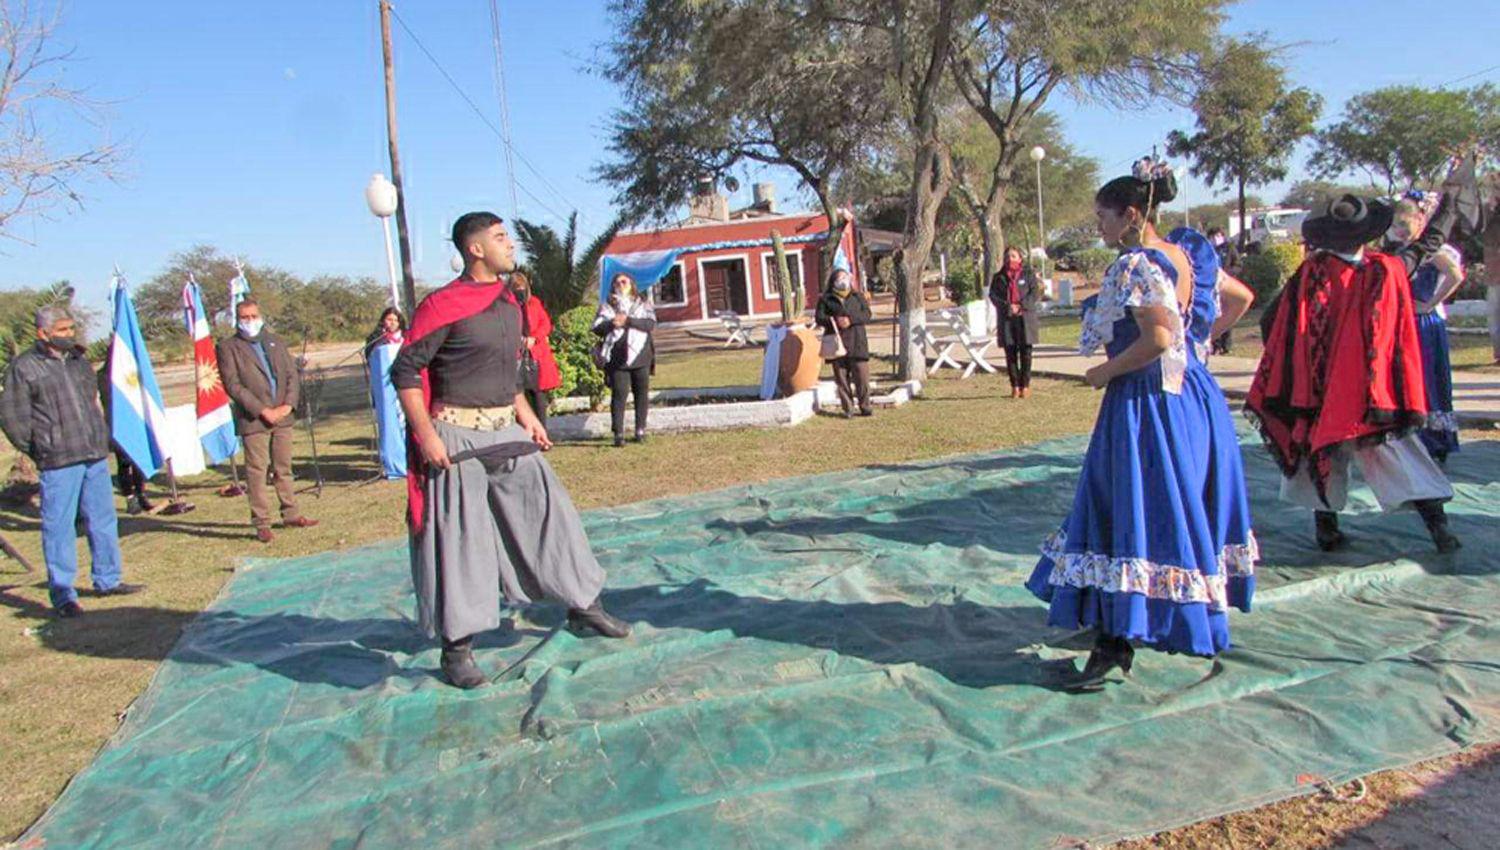 Bailarines locales hicieron una demostración de danzas
tradicionales en los jardines de la comuna